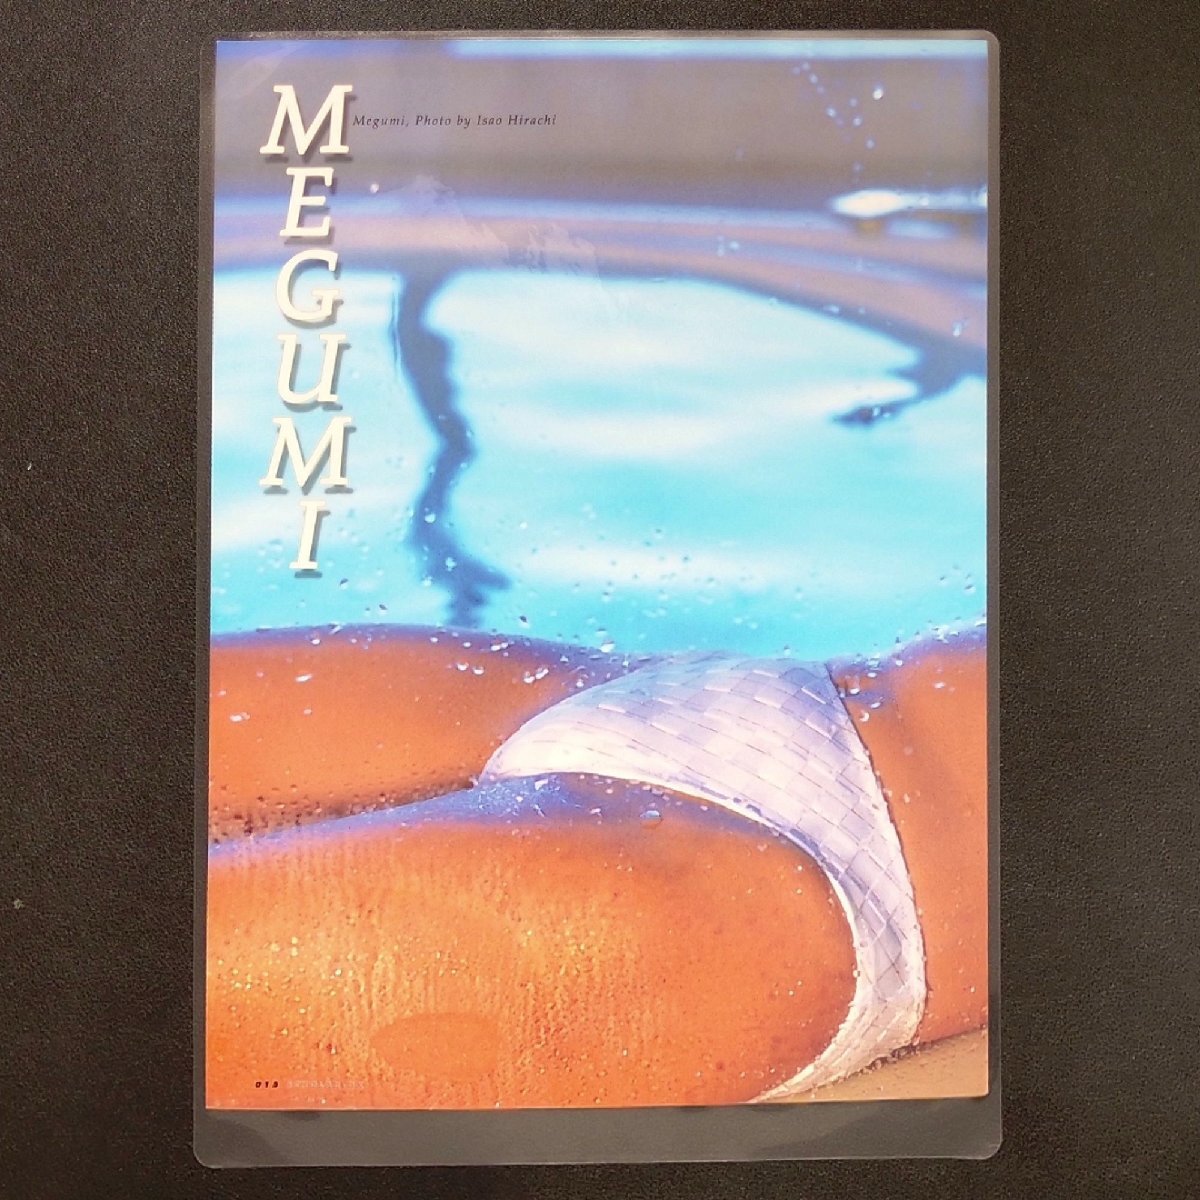 MEGUMI ламинирование обработка журнал порез .10 страница A4 Scola DX 2001 год эпоха Heisei 13 год 12 месяц 1 день выпуск купальный костюм бикини бассейн 